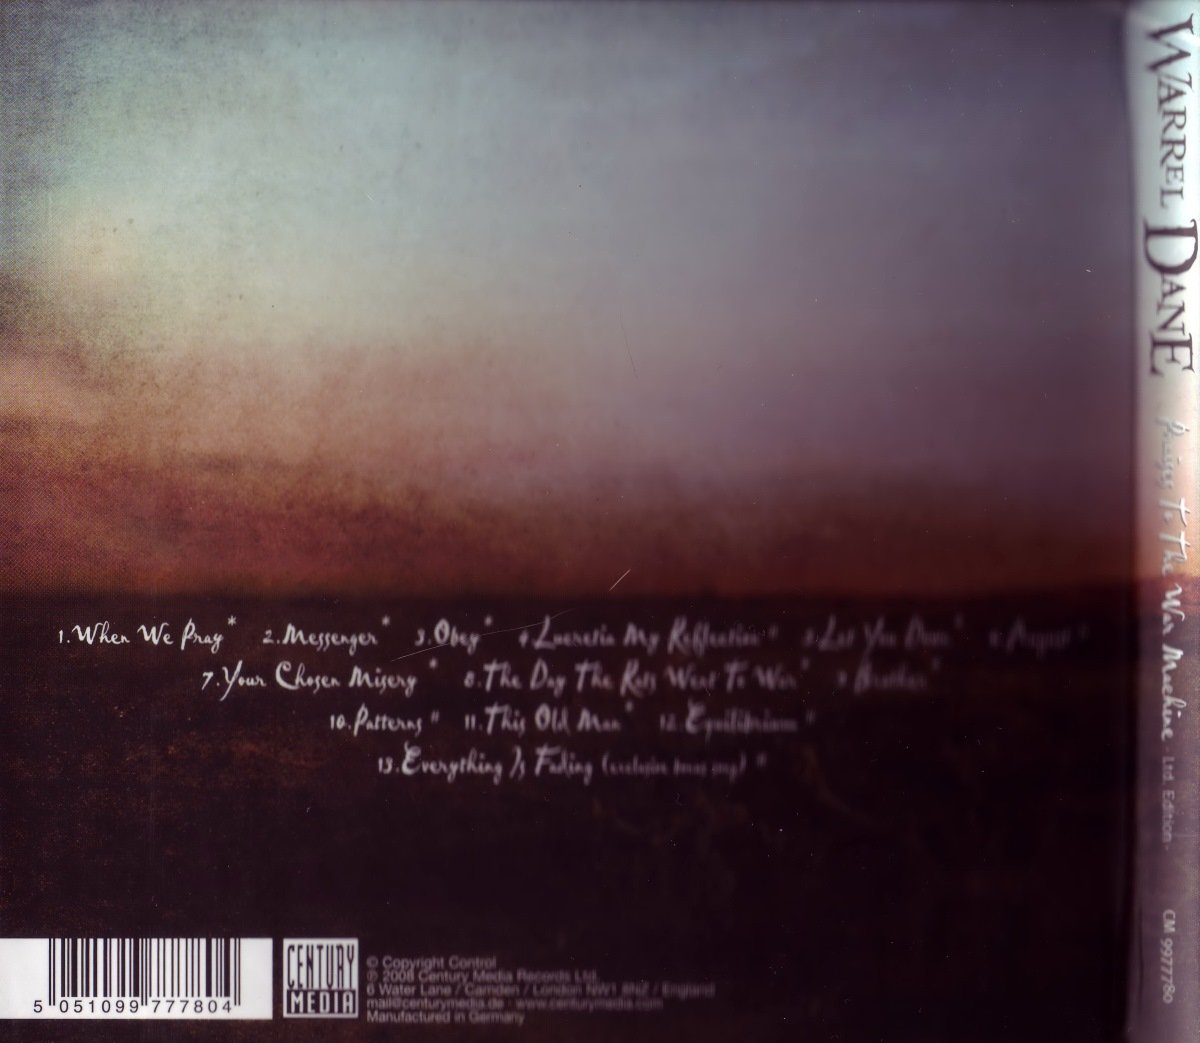 Warrel Dane - Praises To The War Machine [Limited Edition] (2008 ...